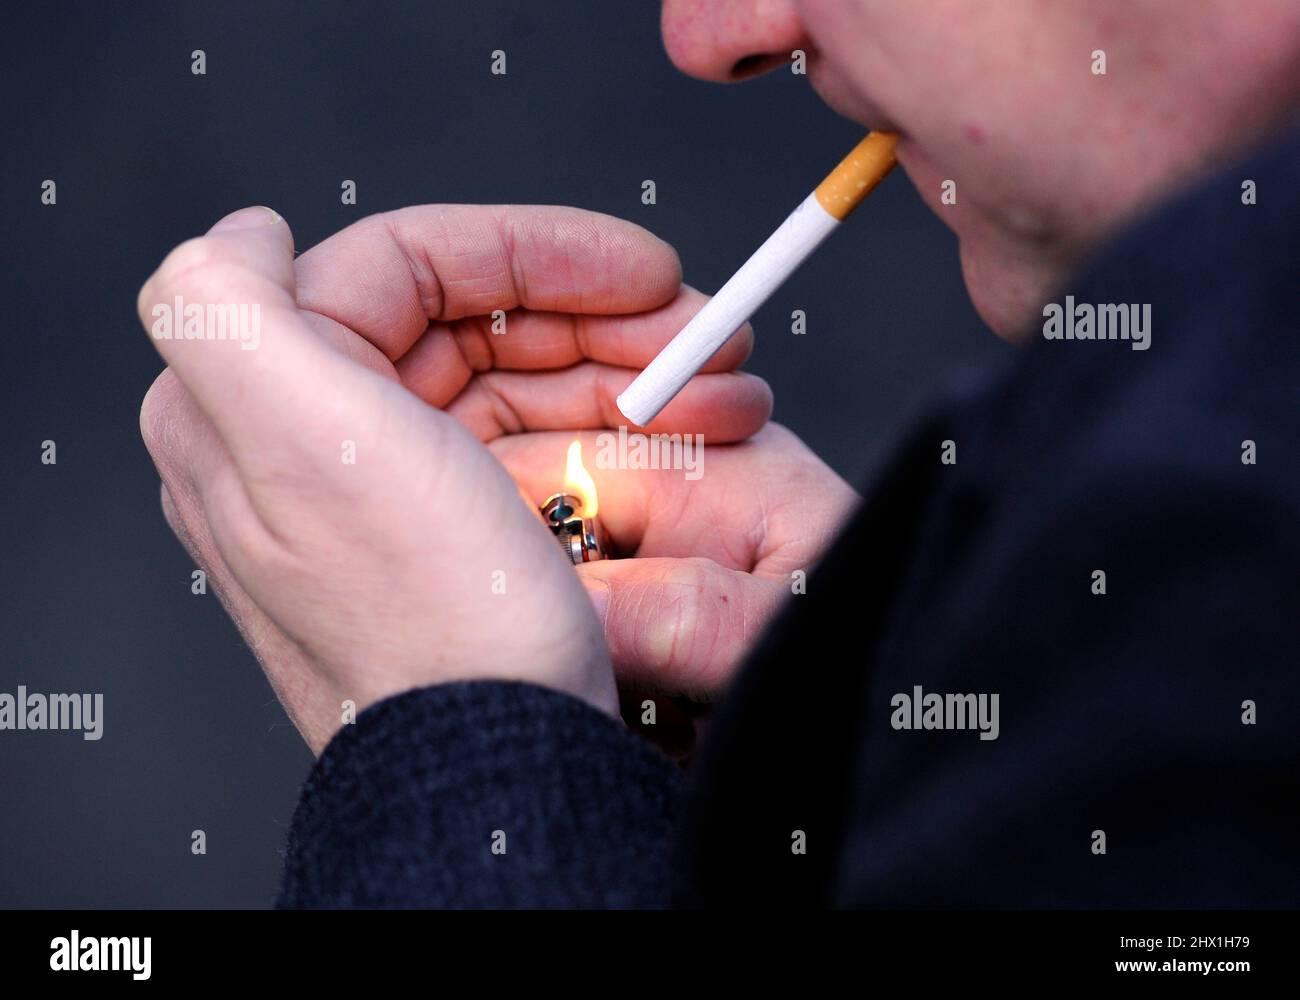 IMAGE POSÉE MON MODÈLE. Photo du dossier datée du 12/03/13 d'un homme qui fume une cigarette, puisque moins de la moitié des fumeurs admis à l'hôpital se voient offrir des conseils sur la façon de cesser de fumer, selon un nouveau sondage. Date de publication : le mercredi 9 mars 2022. Banque D'Images